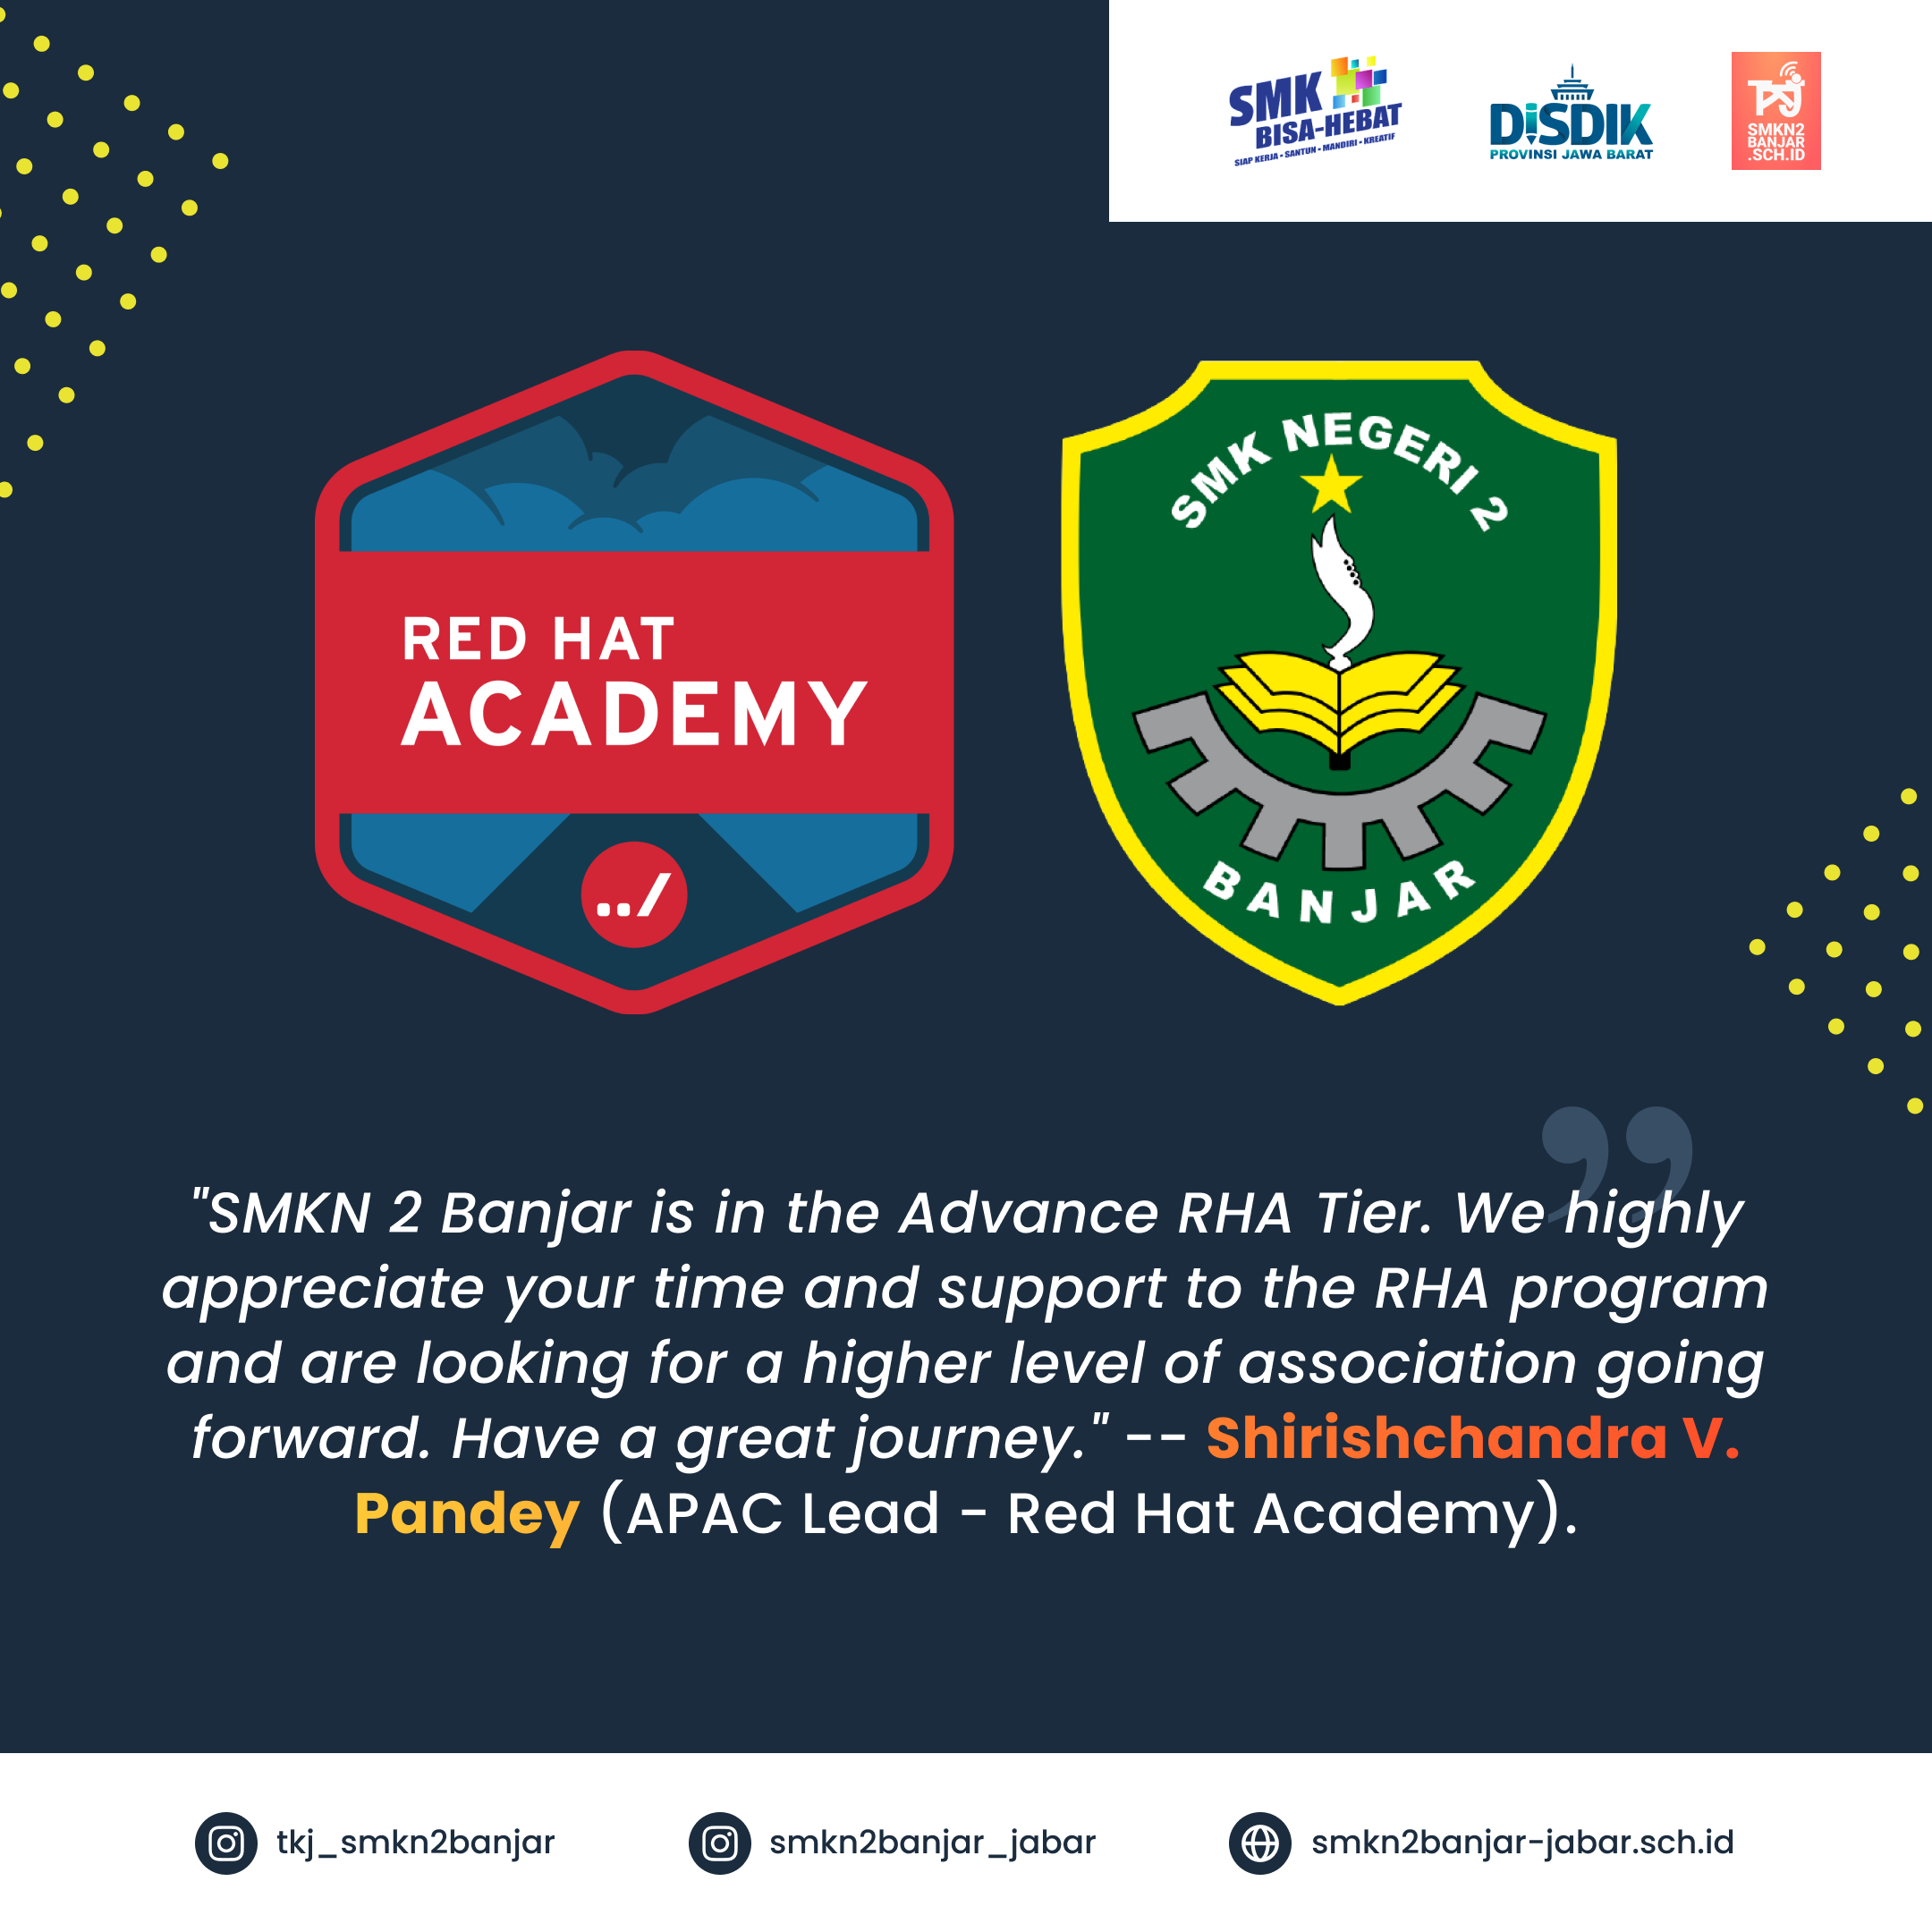 SMK Implementasi Kelas Industri Red Hat Academy Terbaik Wilayah Asia Pasifik 2021 - Shirishchandra V. Pandey